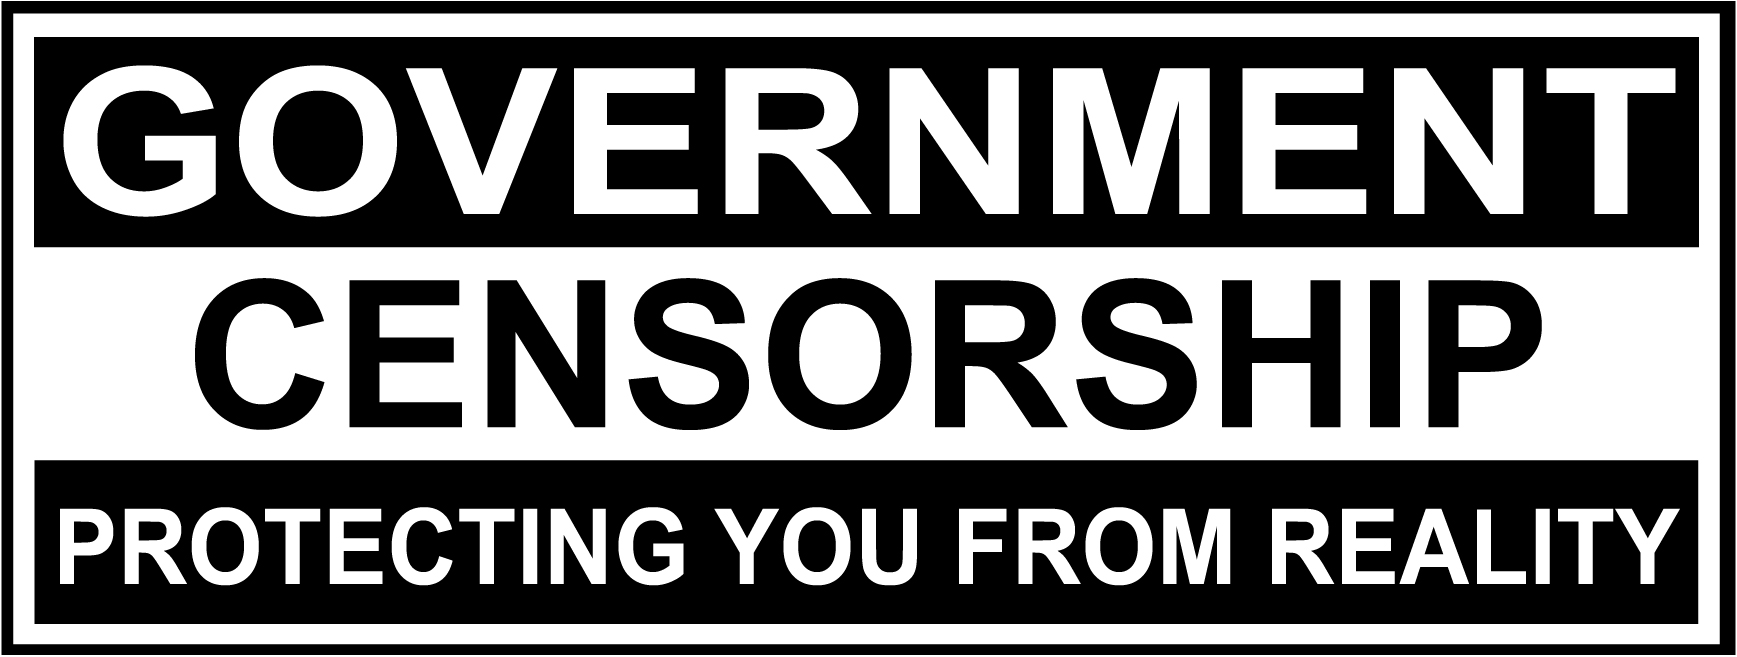 Government Censorship bumper sticker.